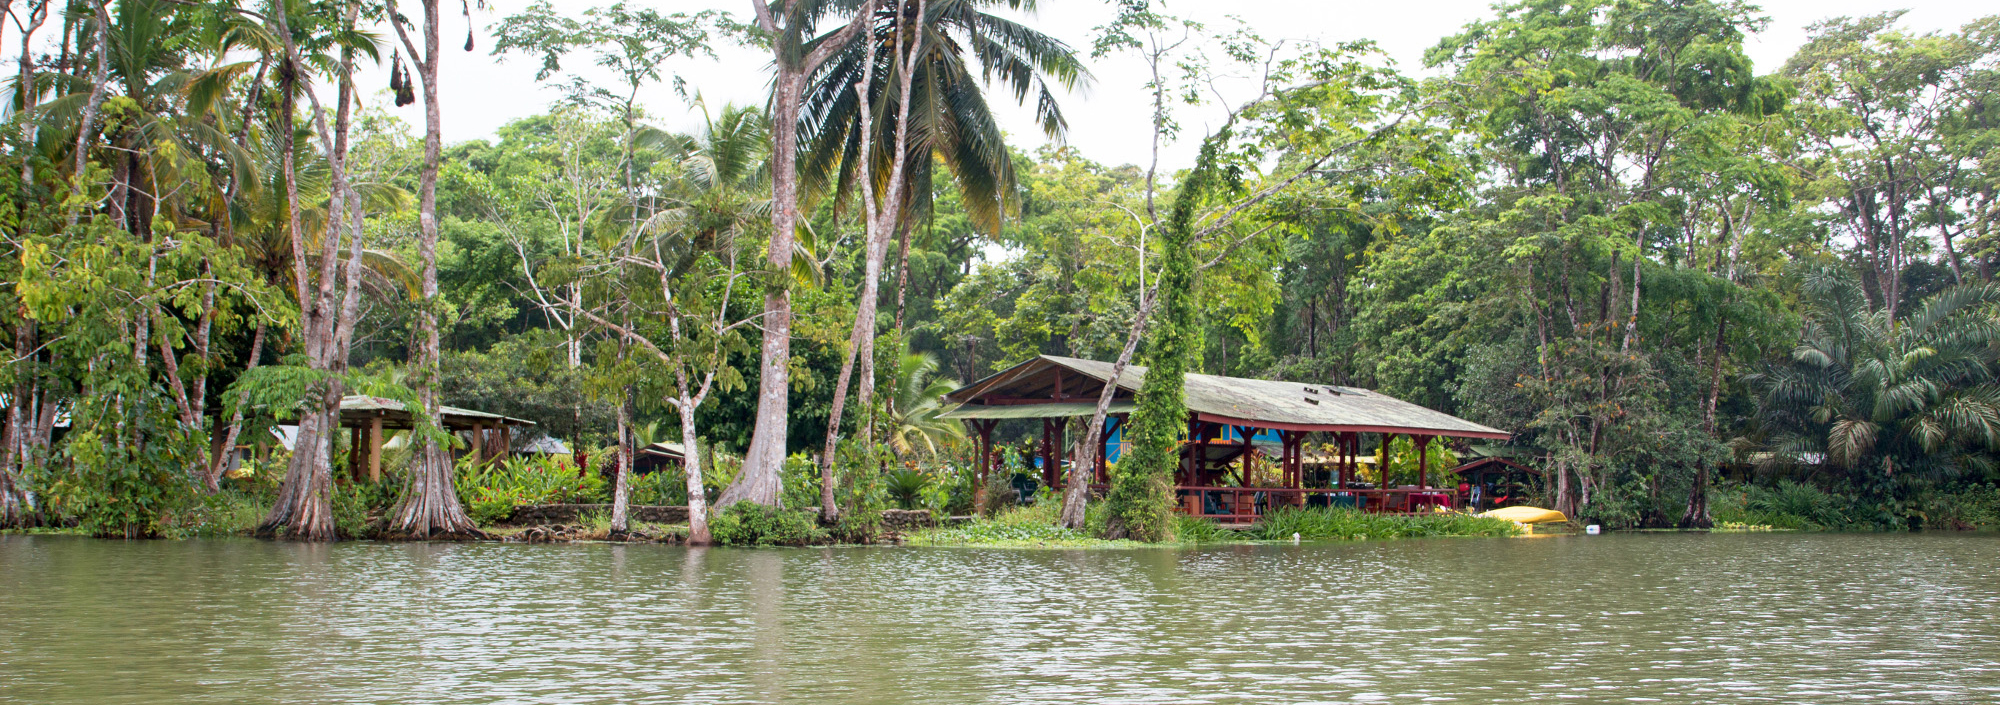 Lirio Lodge im Pacuare Reservat an der Karibikküste von Costa Rica